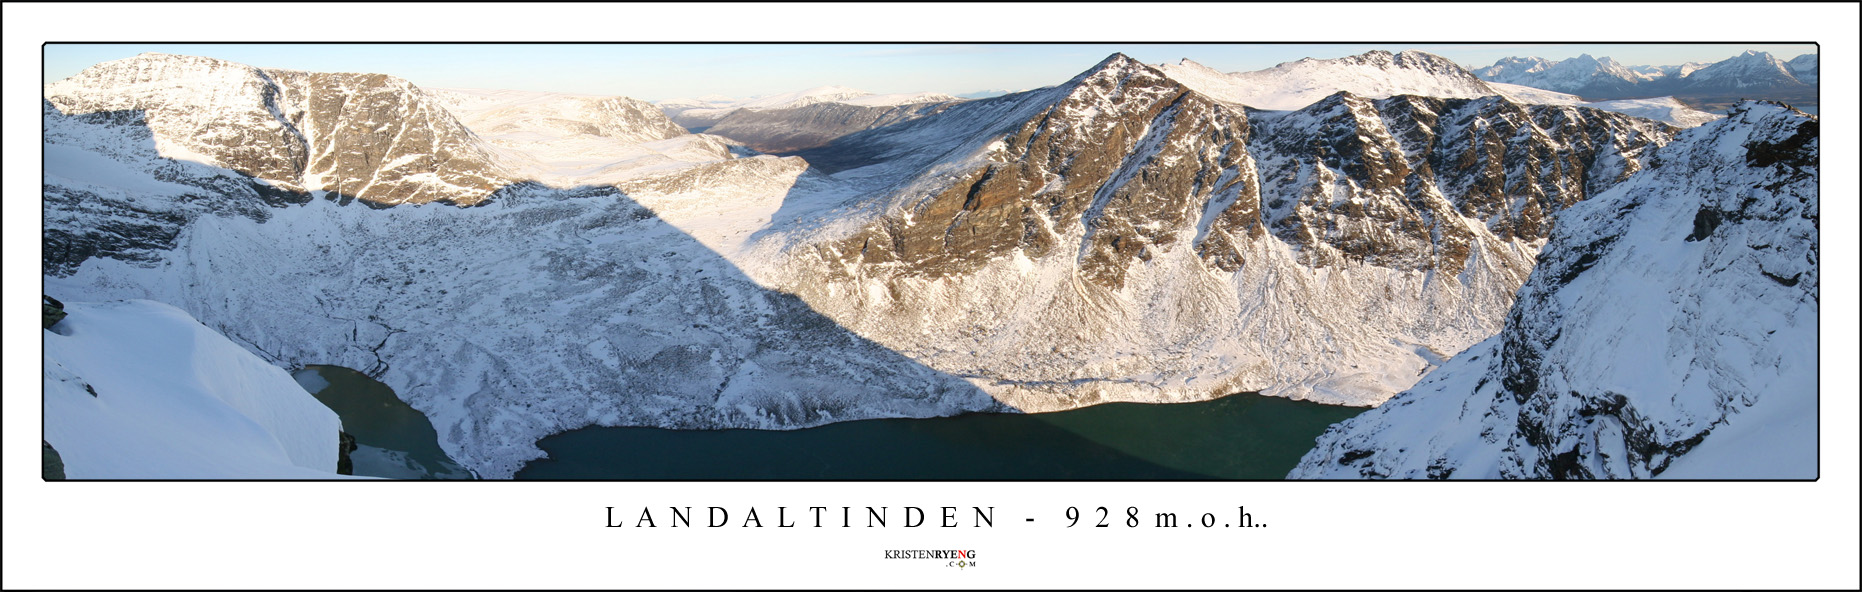 Panorama-Langdaltinden3.jpg - Utsikt fra toppen av Langdaltinden (924 moh). Her inn dalen som leder mot Snarbyeidet. Legg merke til skrivefeilen på bildet.... *Arg*